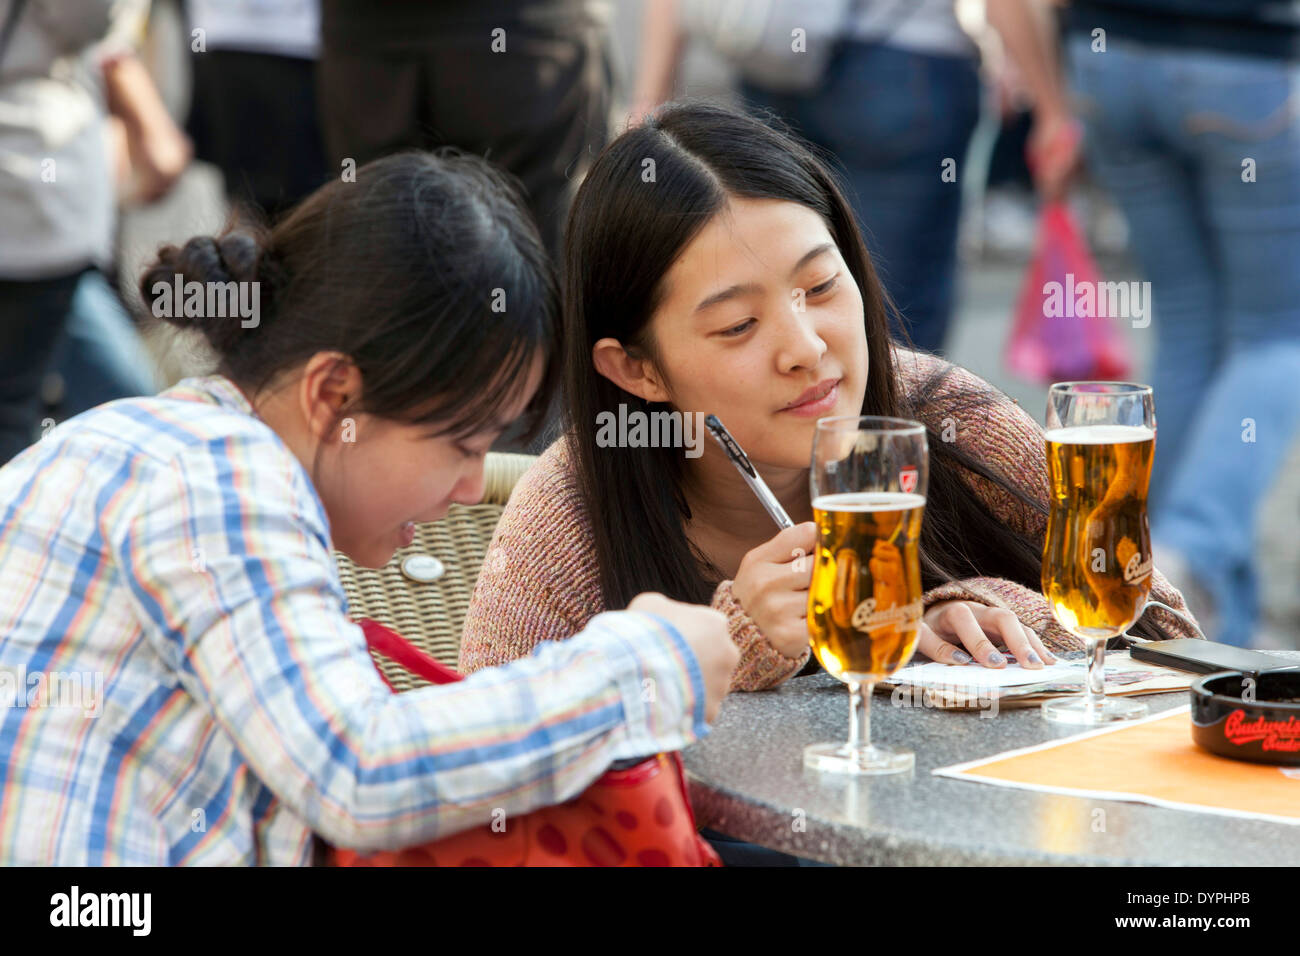 Junge asiatische Touristen im Stadtzentrum ruhen in einer Straßenbar, Altstädter Ring Prag Tschechische Republik Tourismus Junge asiatische Frauen Stockfoto